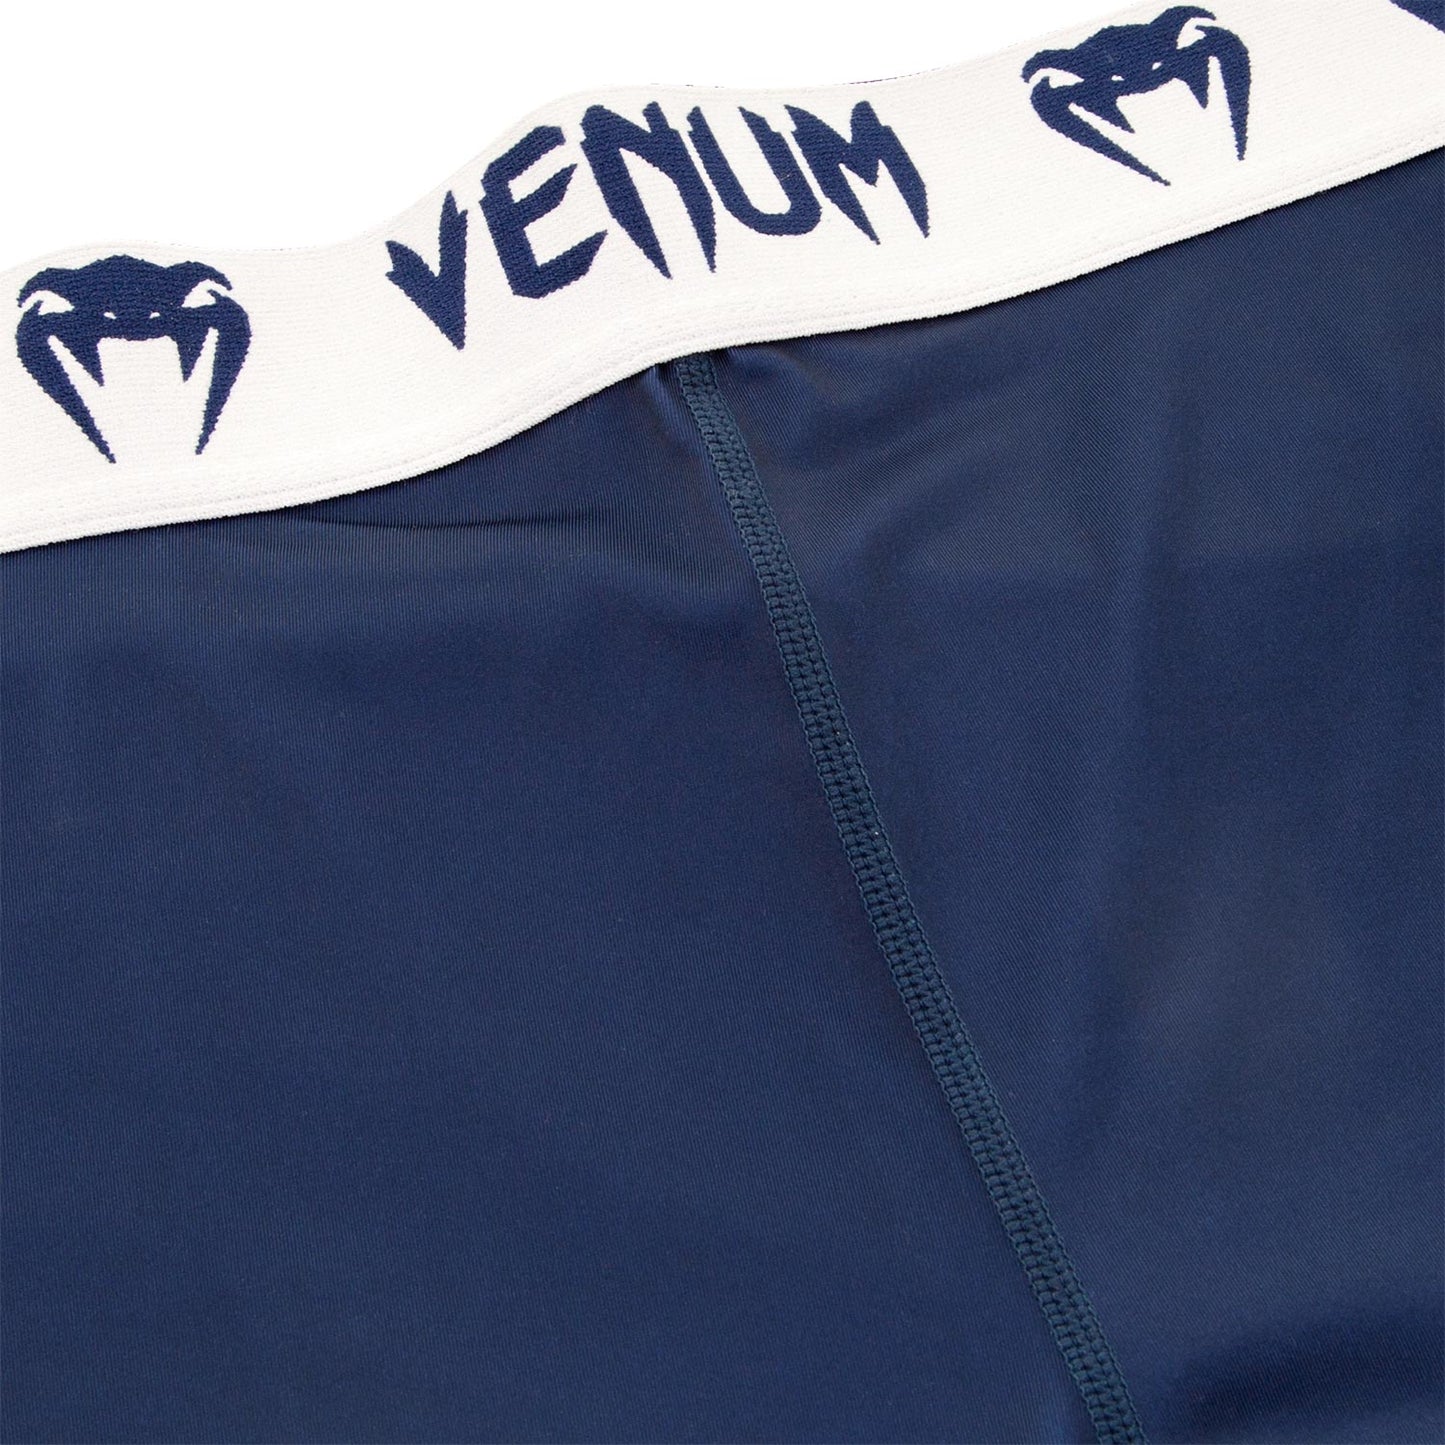 Pantalones de compresión Venum Giant - Azul Marino/Blanco